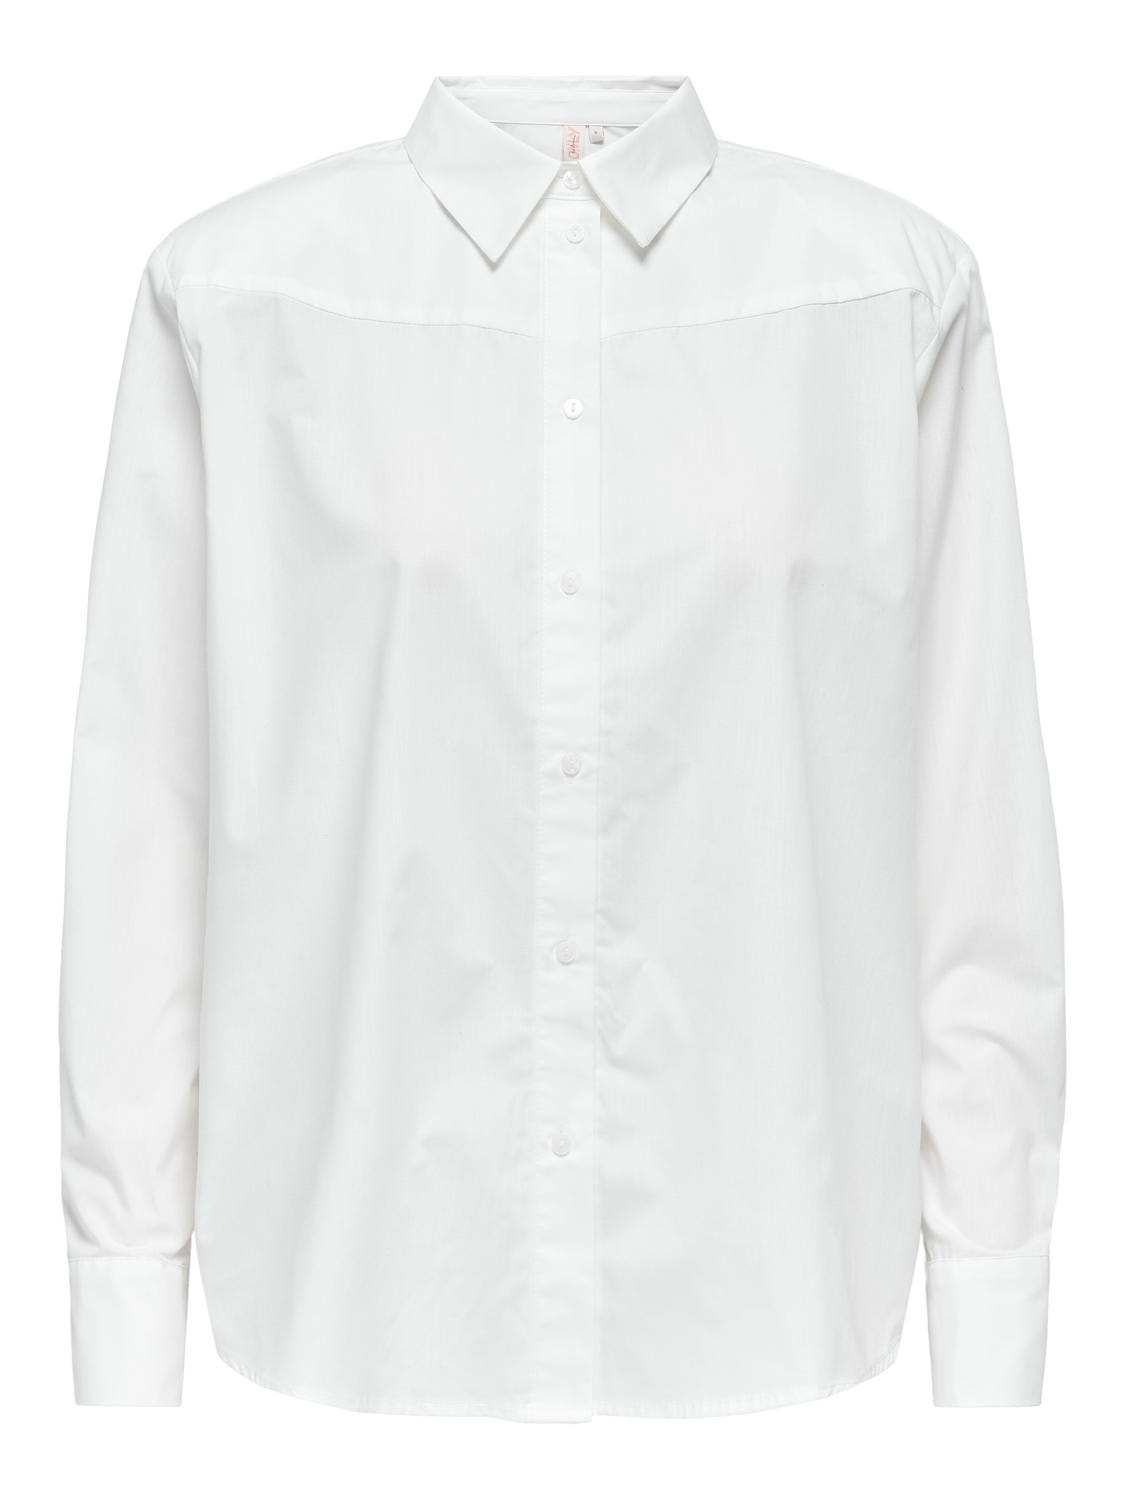 ONLY Camisas Corte relaxed Cuello de camisa Puños abotonados -White - 15327687